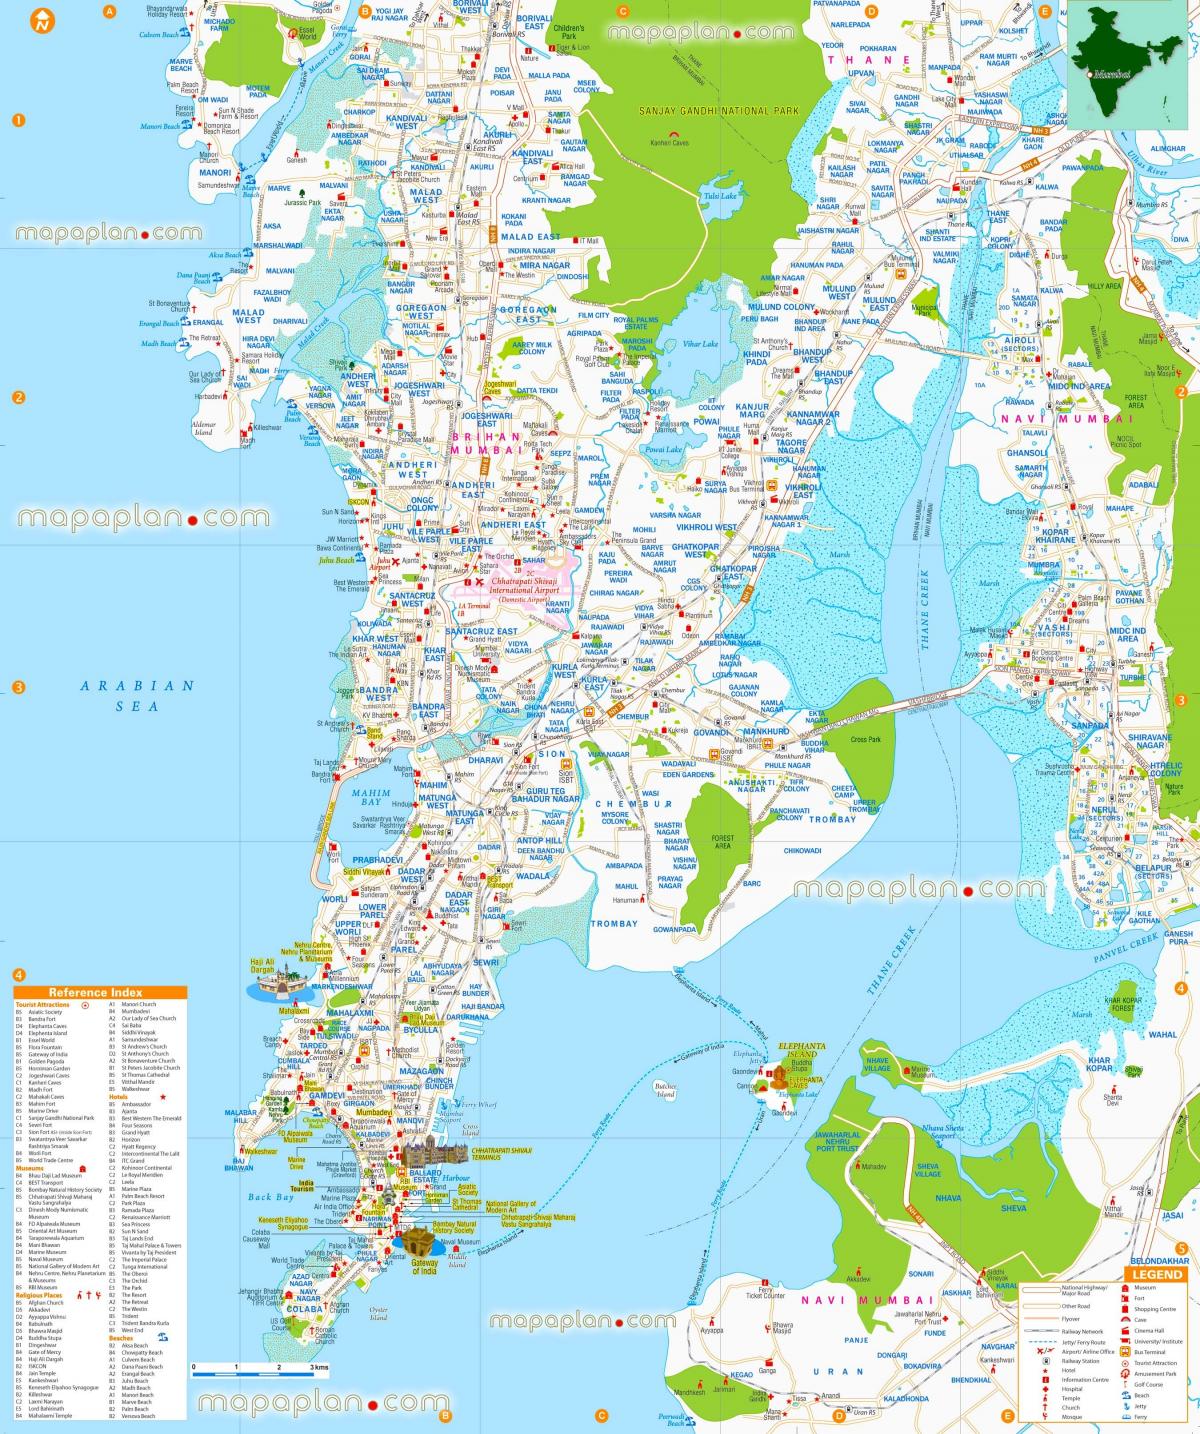 Mapa turístico de Mumbai - Bombay